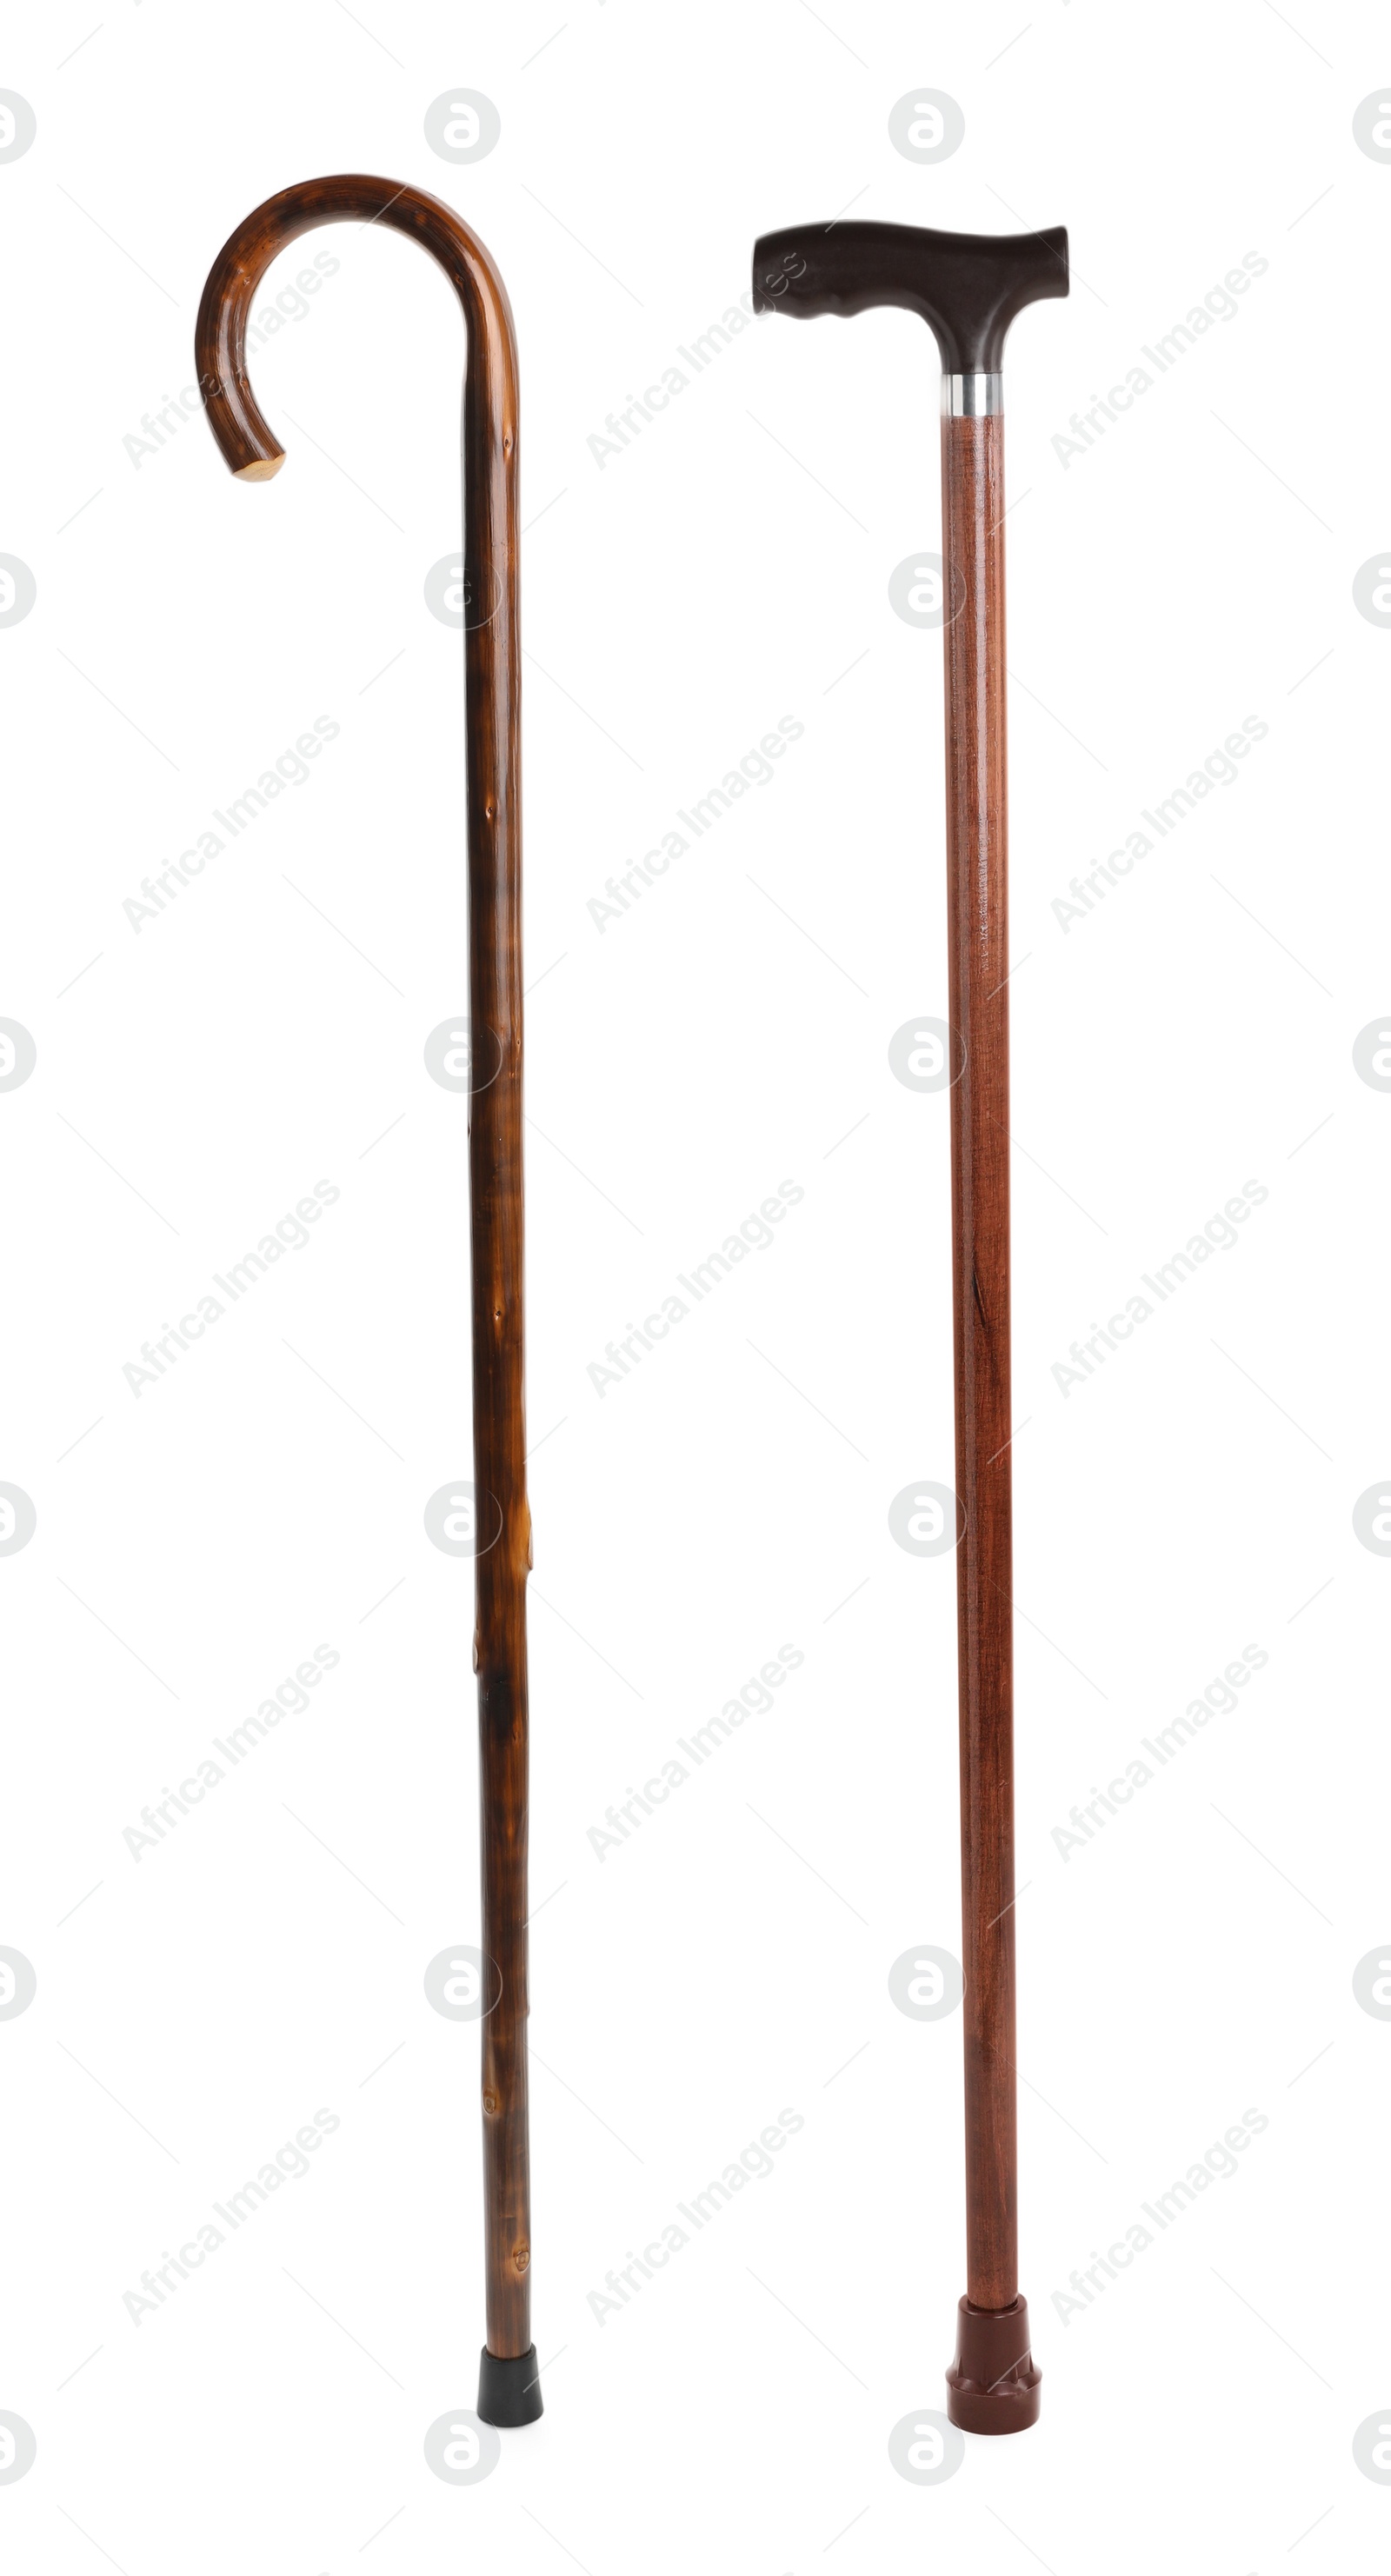 Image of Elegant wooden walking canes on white background